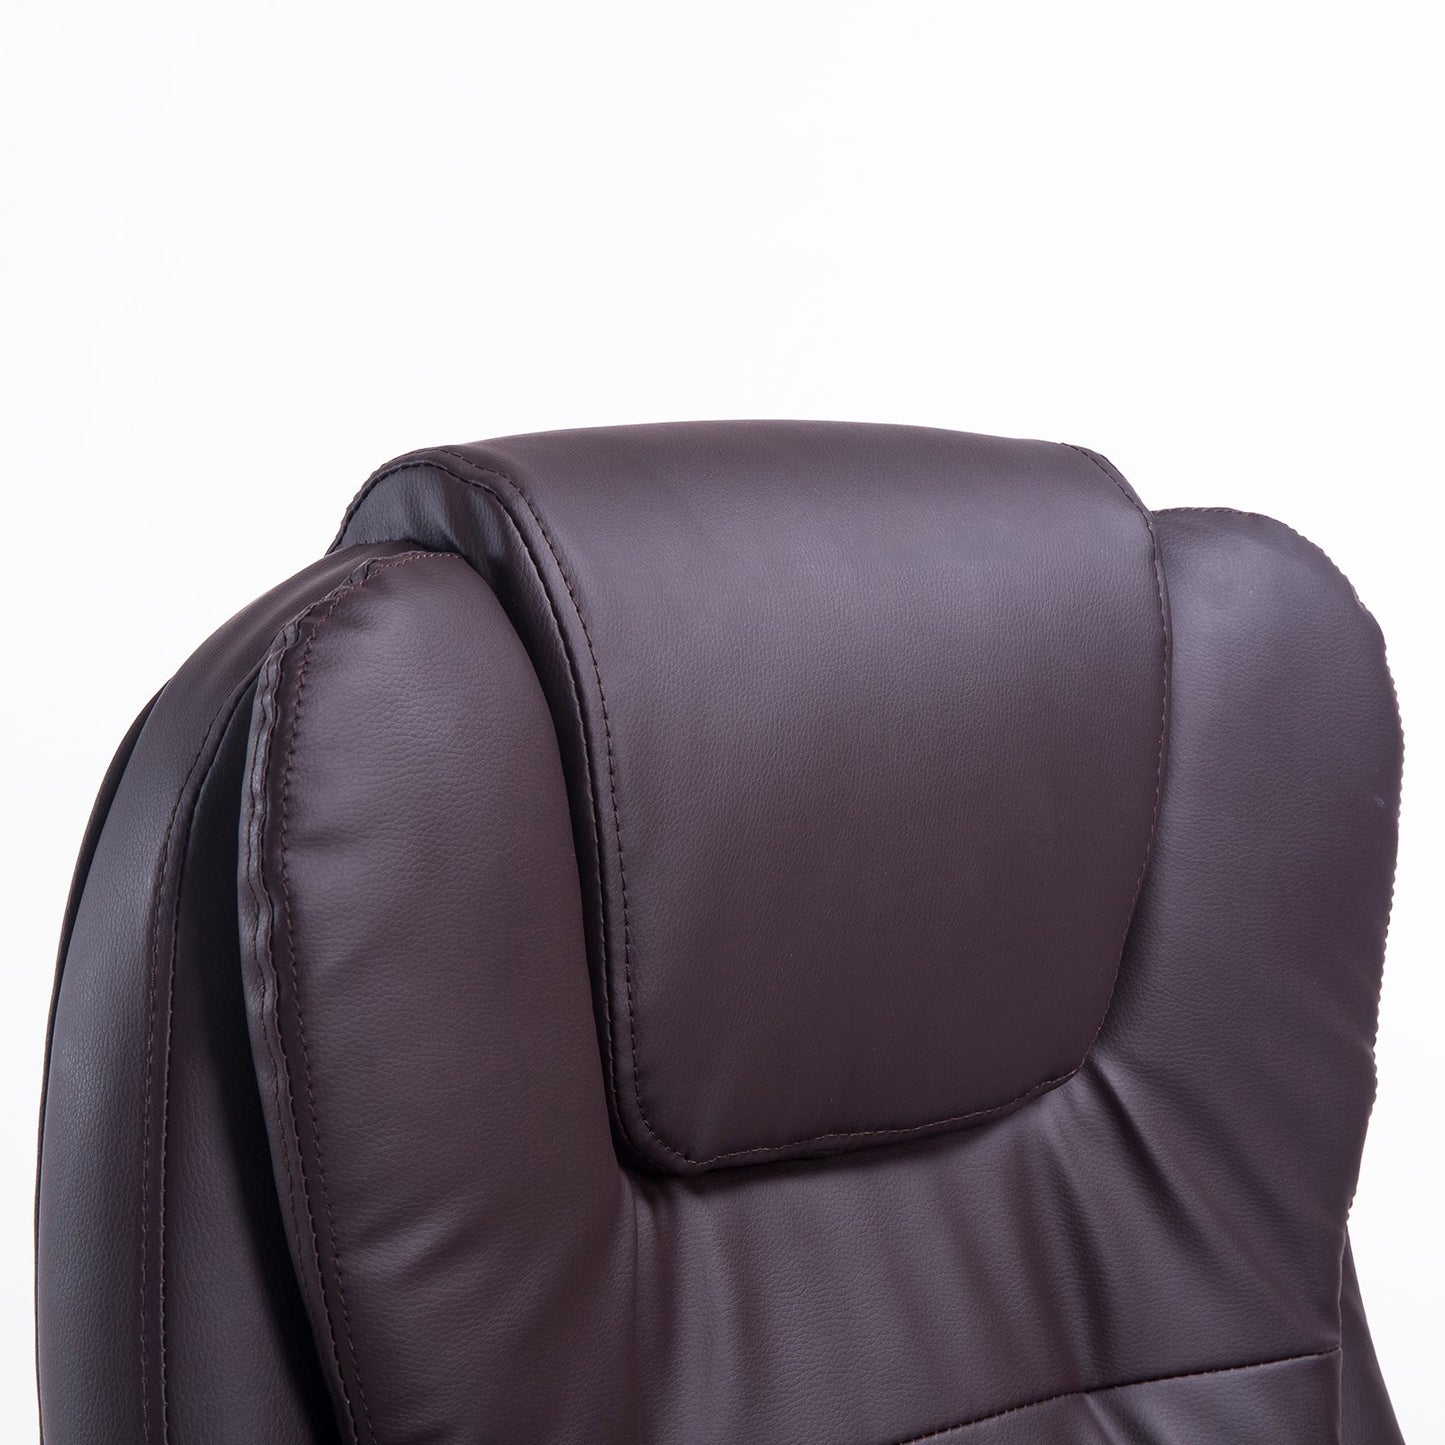 Chaise de bureau Nancy's Central City - Fonction massage et chauffage - Marron - 62 x 68 x 111 - 121 cm